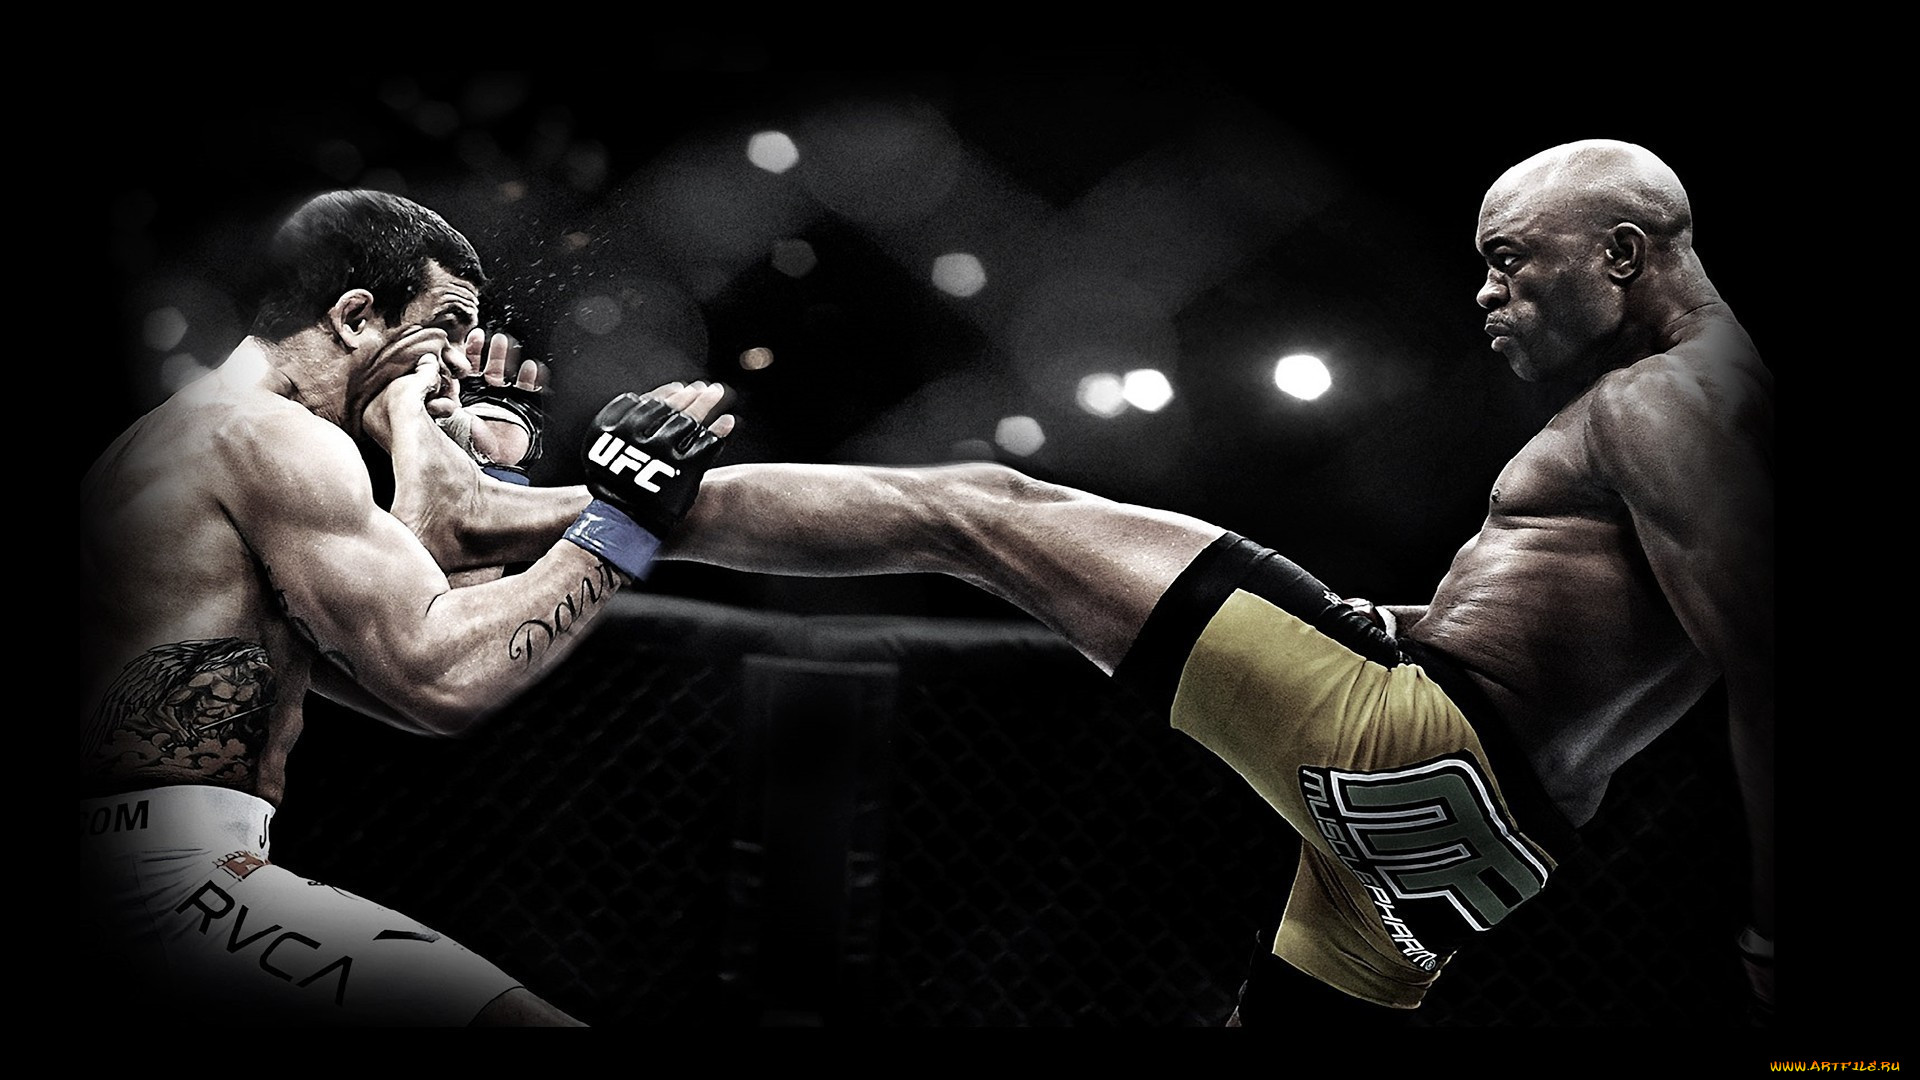 Обои UFC Спорт Mix Fight, обои для рабочего стола, фотографии ufc, спорт,  mix, fight, драки, бои, без, правил Обои для рабочего стола, скачать обои  картинки заставки на рабочий стол.